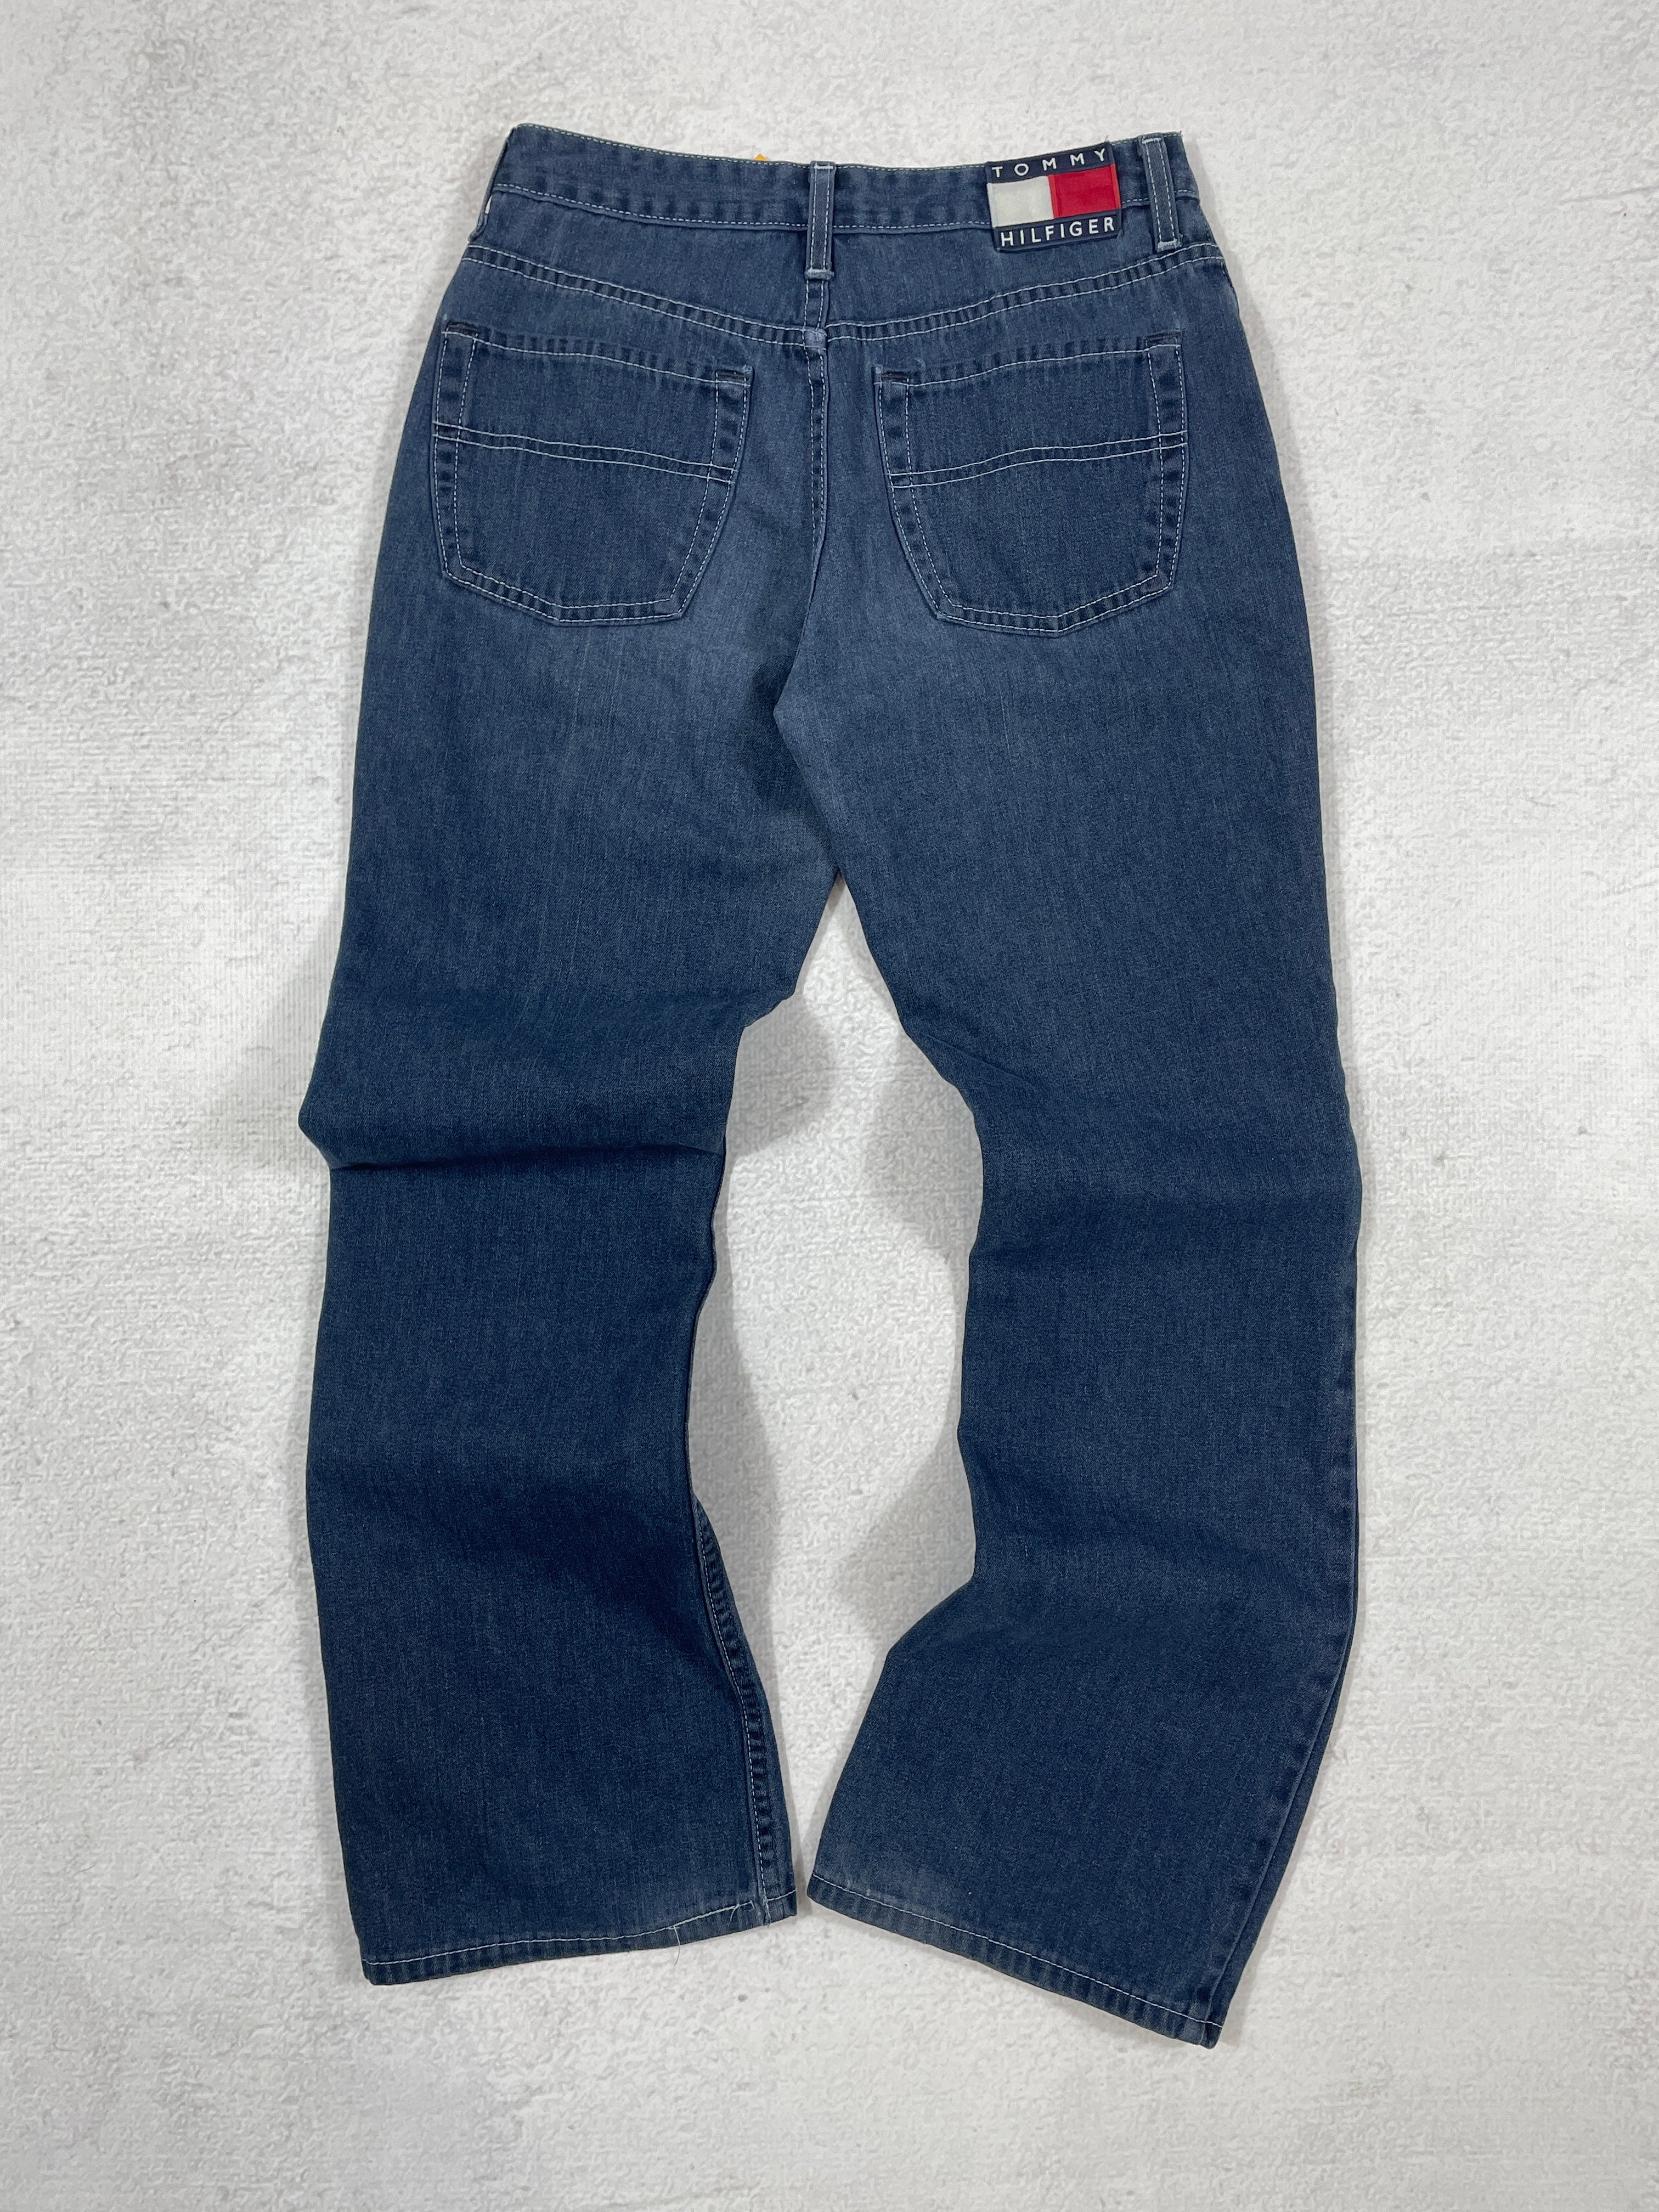 Vintage Tommy Hilfiger Jeans - Men's 29